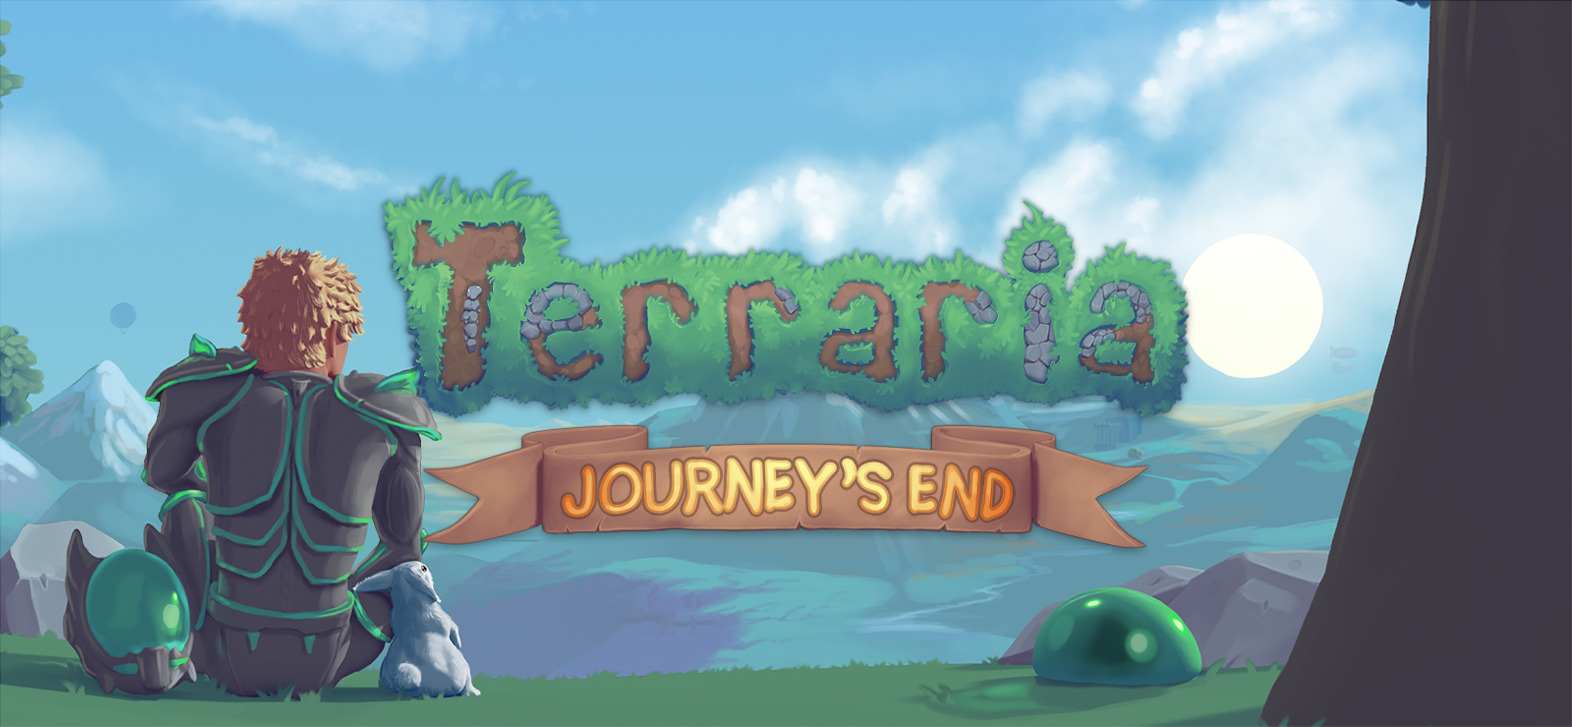 Terraria 1.1 2 mac download torrent